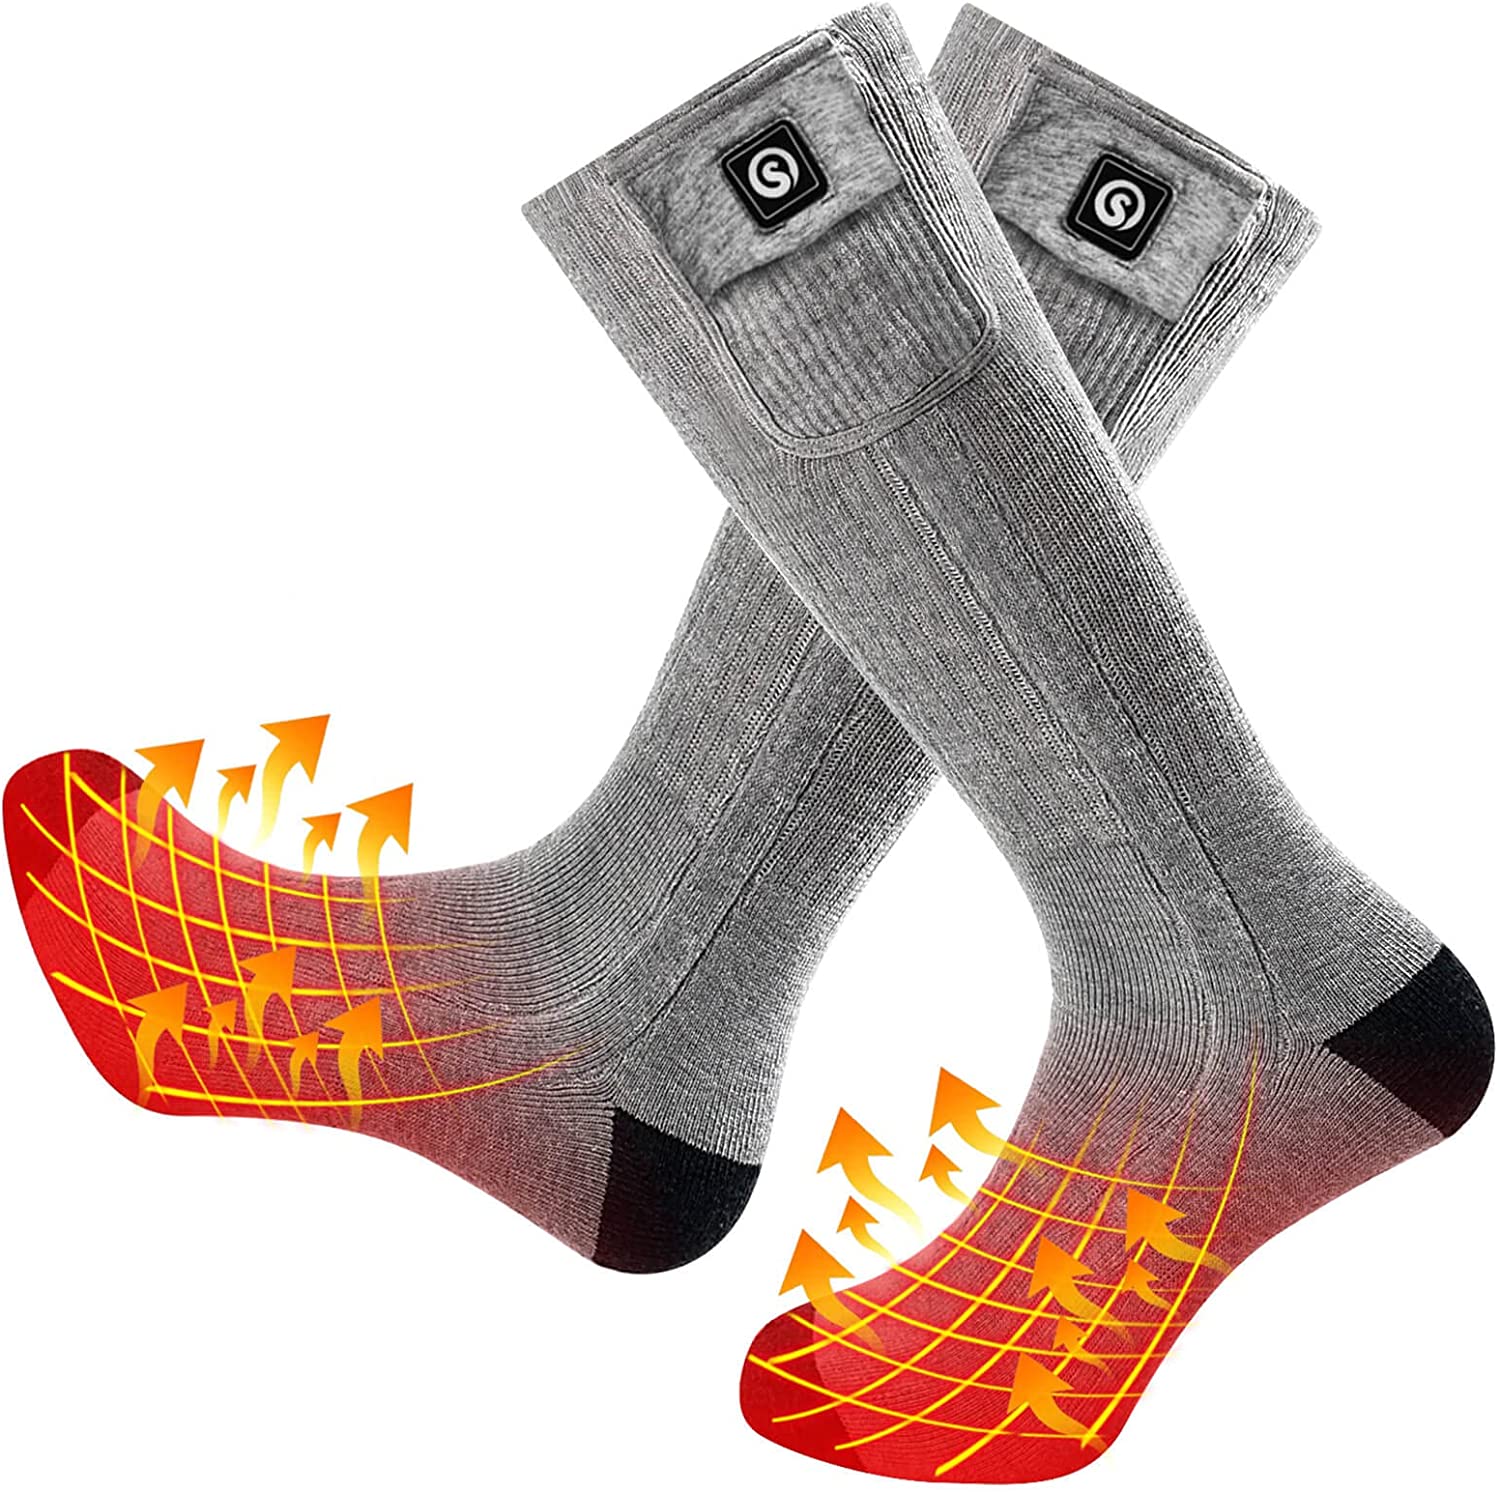  Heated Socks For Men Women, Rechargeable Electric Socks  5V/5000mAh Powered Battery